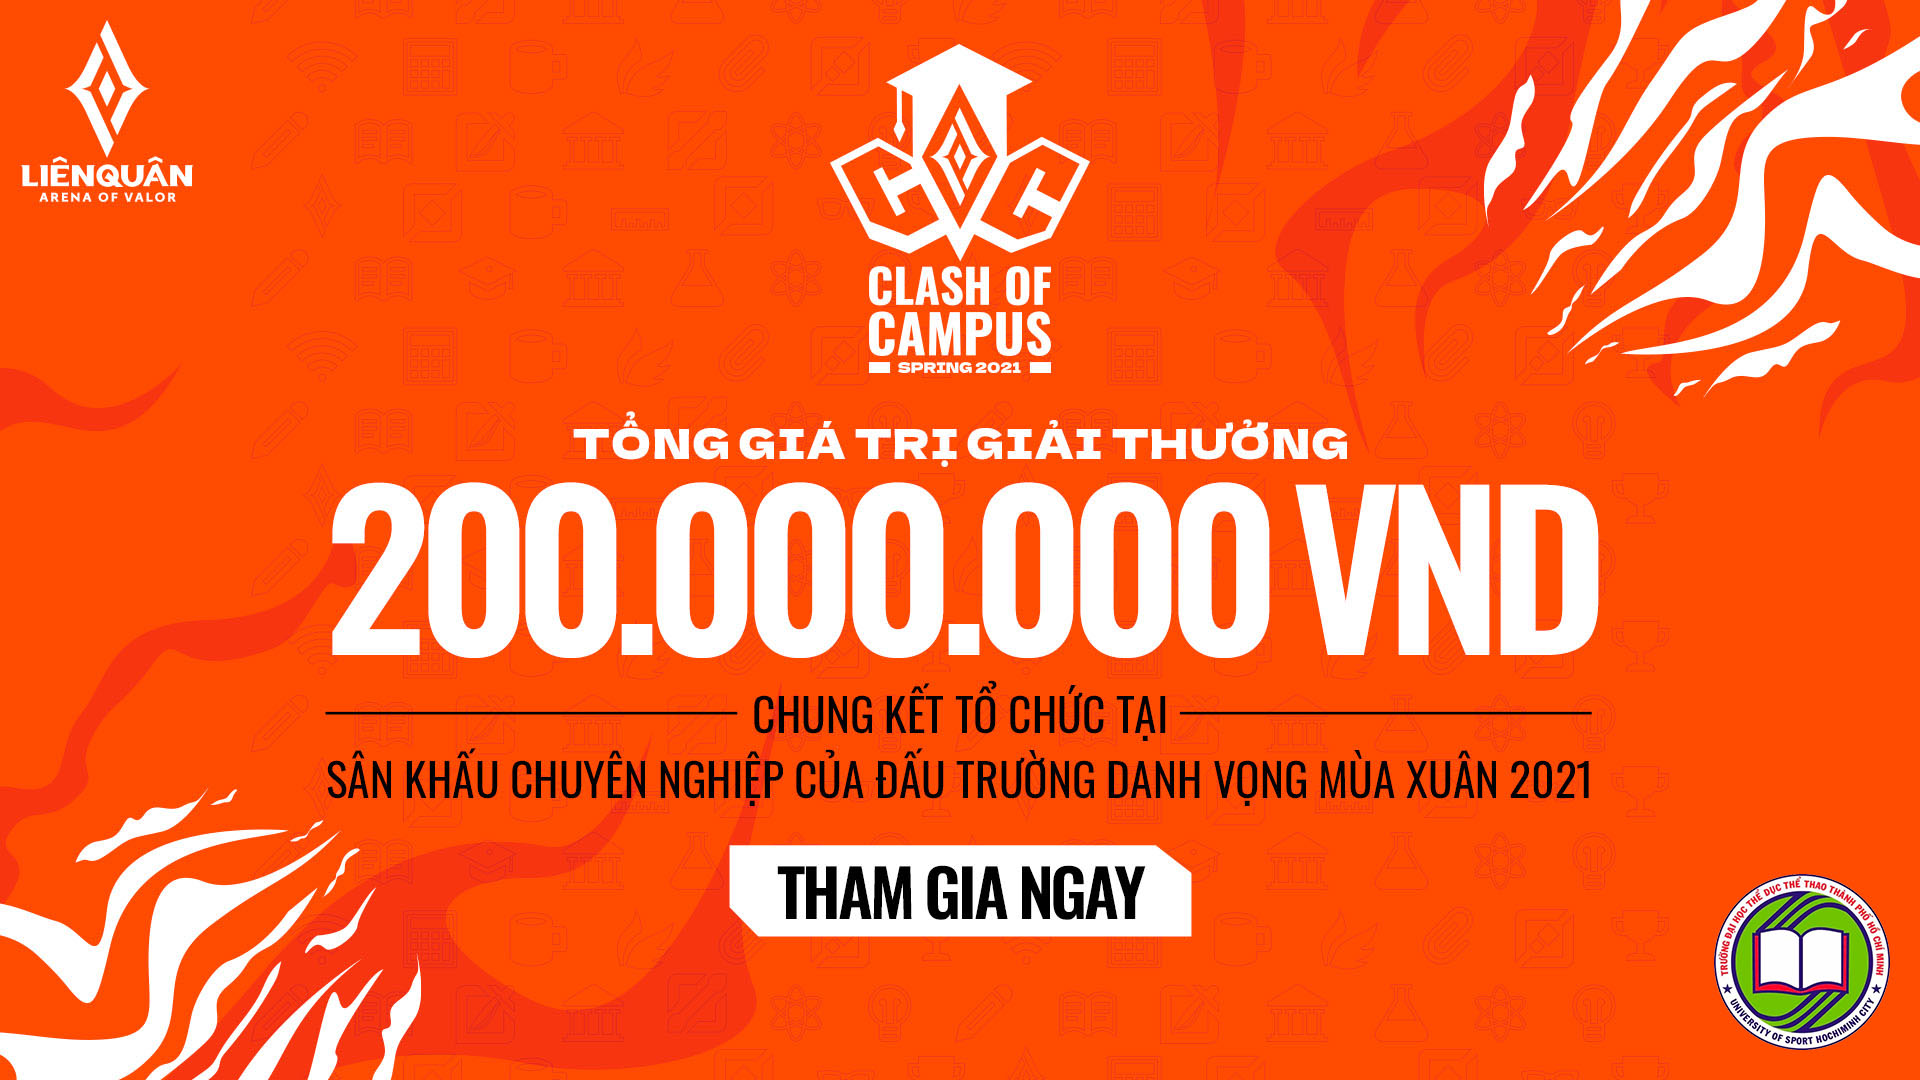 Liên Quân Mobile – Công bố “Giải đấu sinh viên Clash of Campus với tổng giải thưởng lên đến 200 triệu đồng”